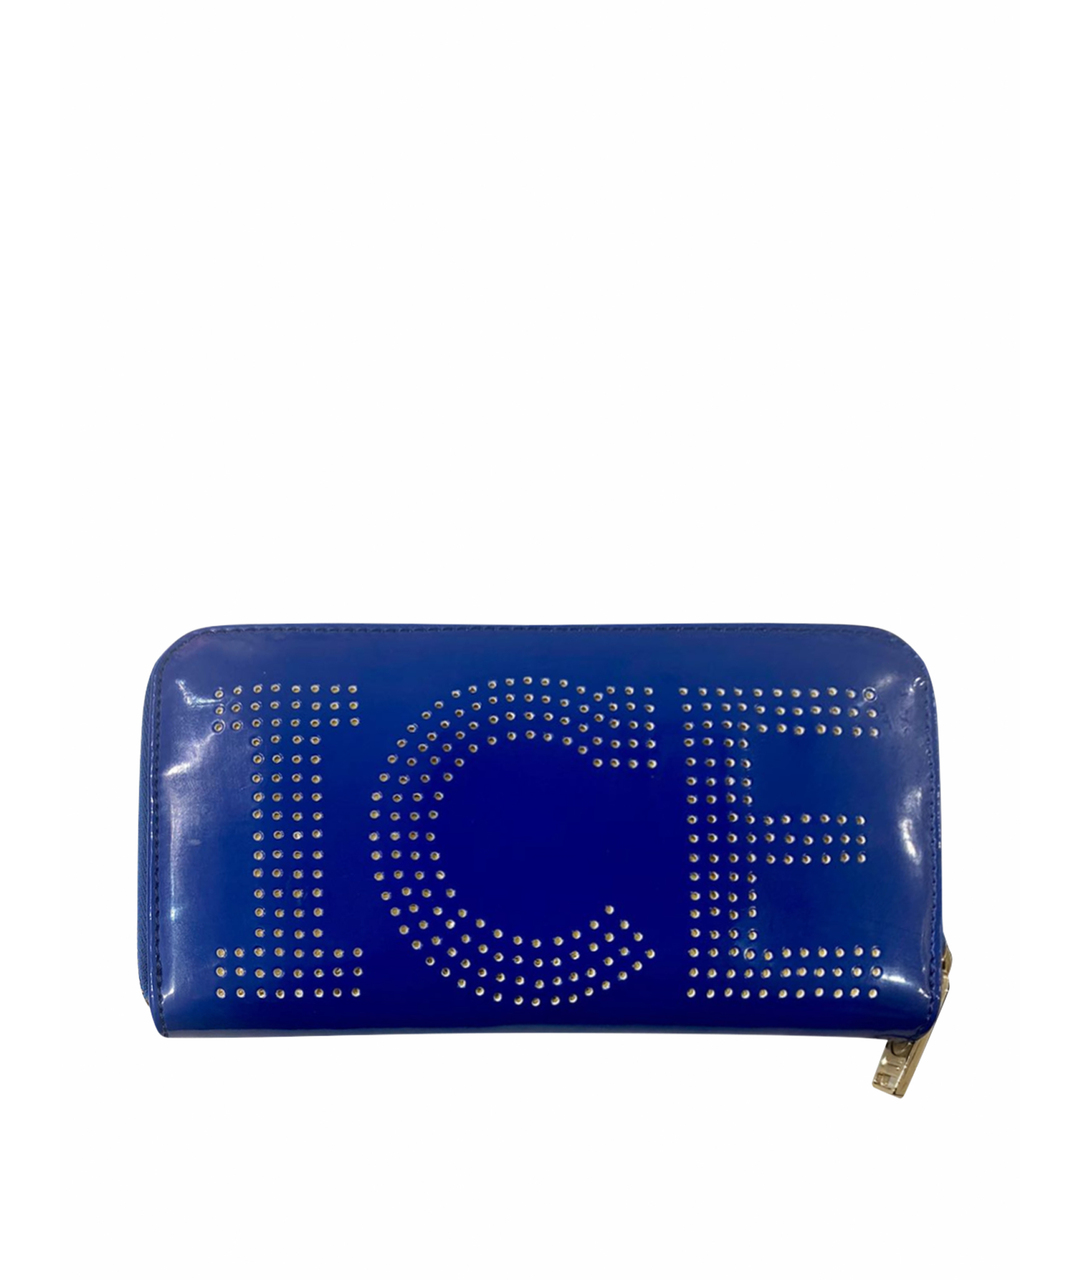 ICEBERG Синий кошелек из искусственной кожи, фото 1